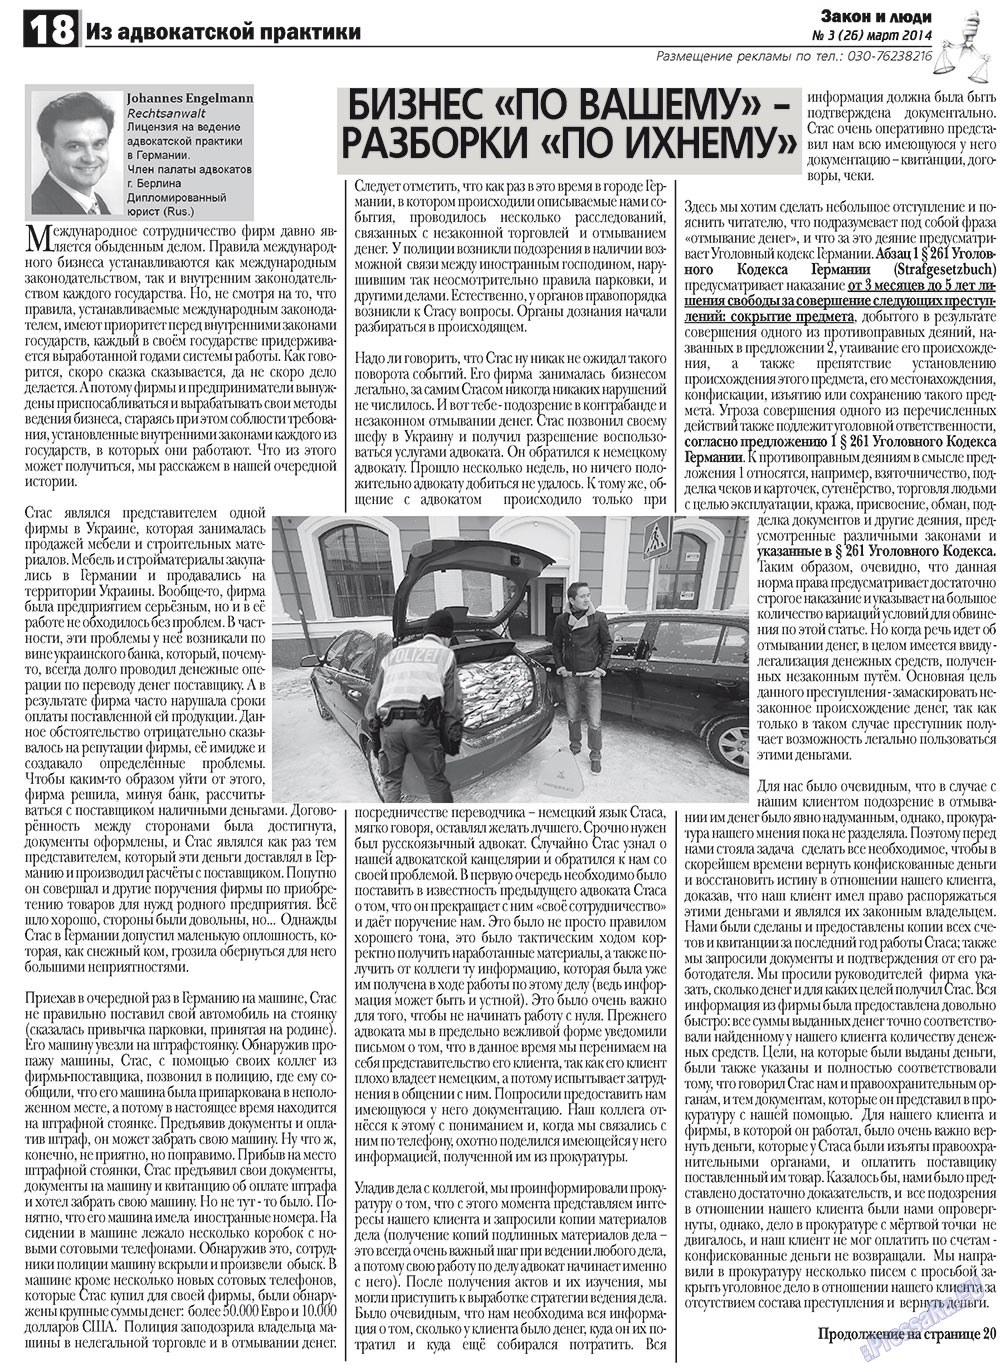 Закон и люди, газета. 2012 №3 стр.18